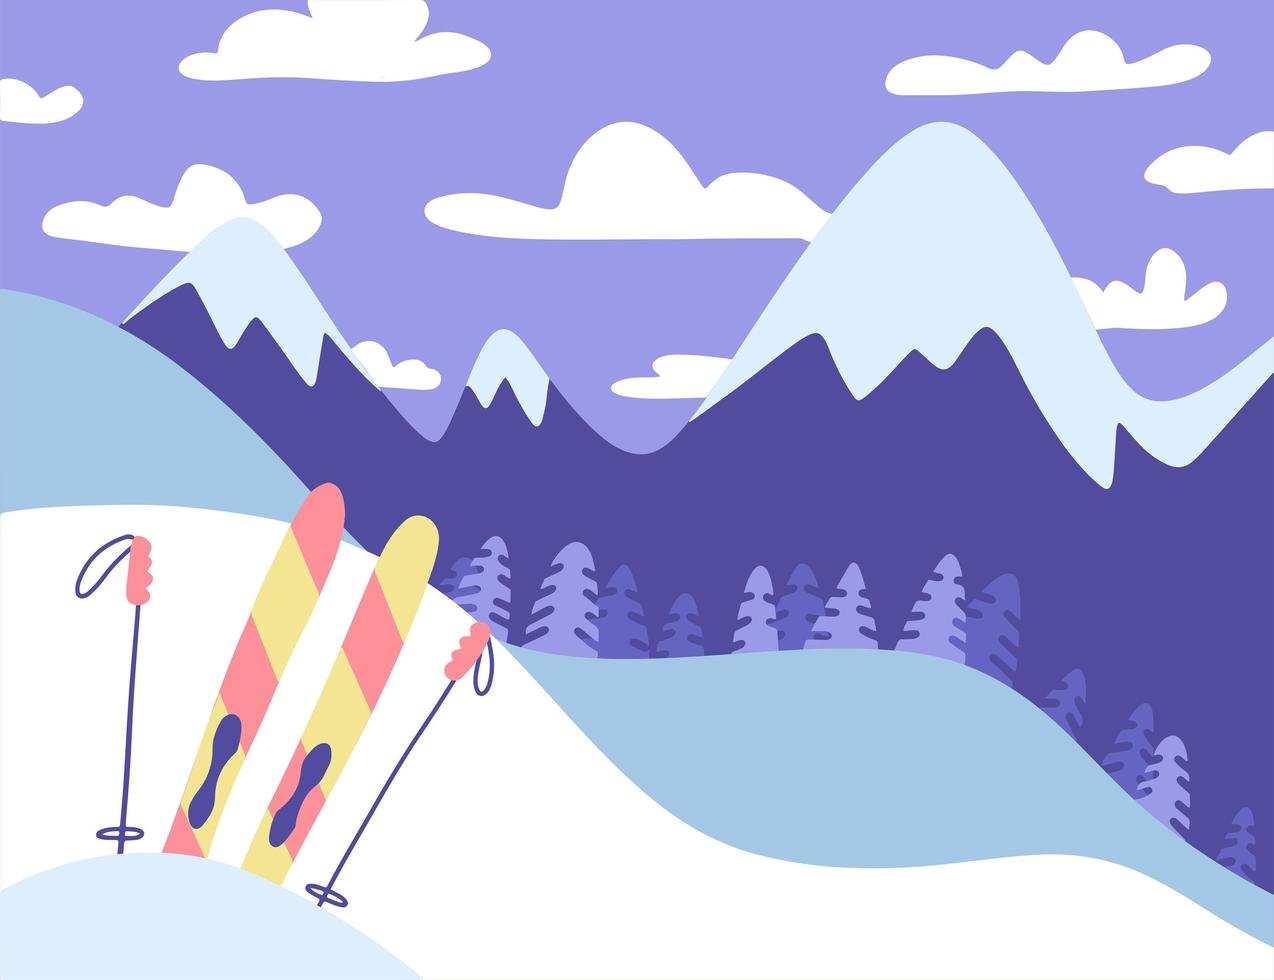 bannière de station de ski, paysage de montagnes panoramiques, forêt de sapins, ski coloré avec des bâtons. concept d'illustration large hiver plat. conception de vecteur